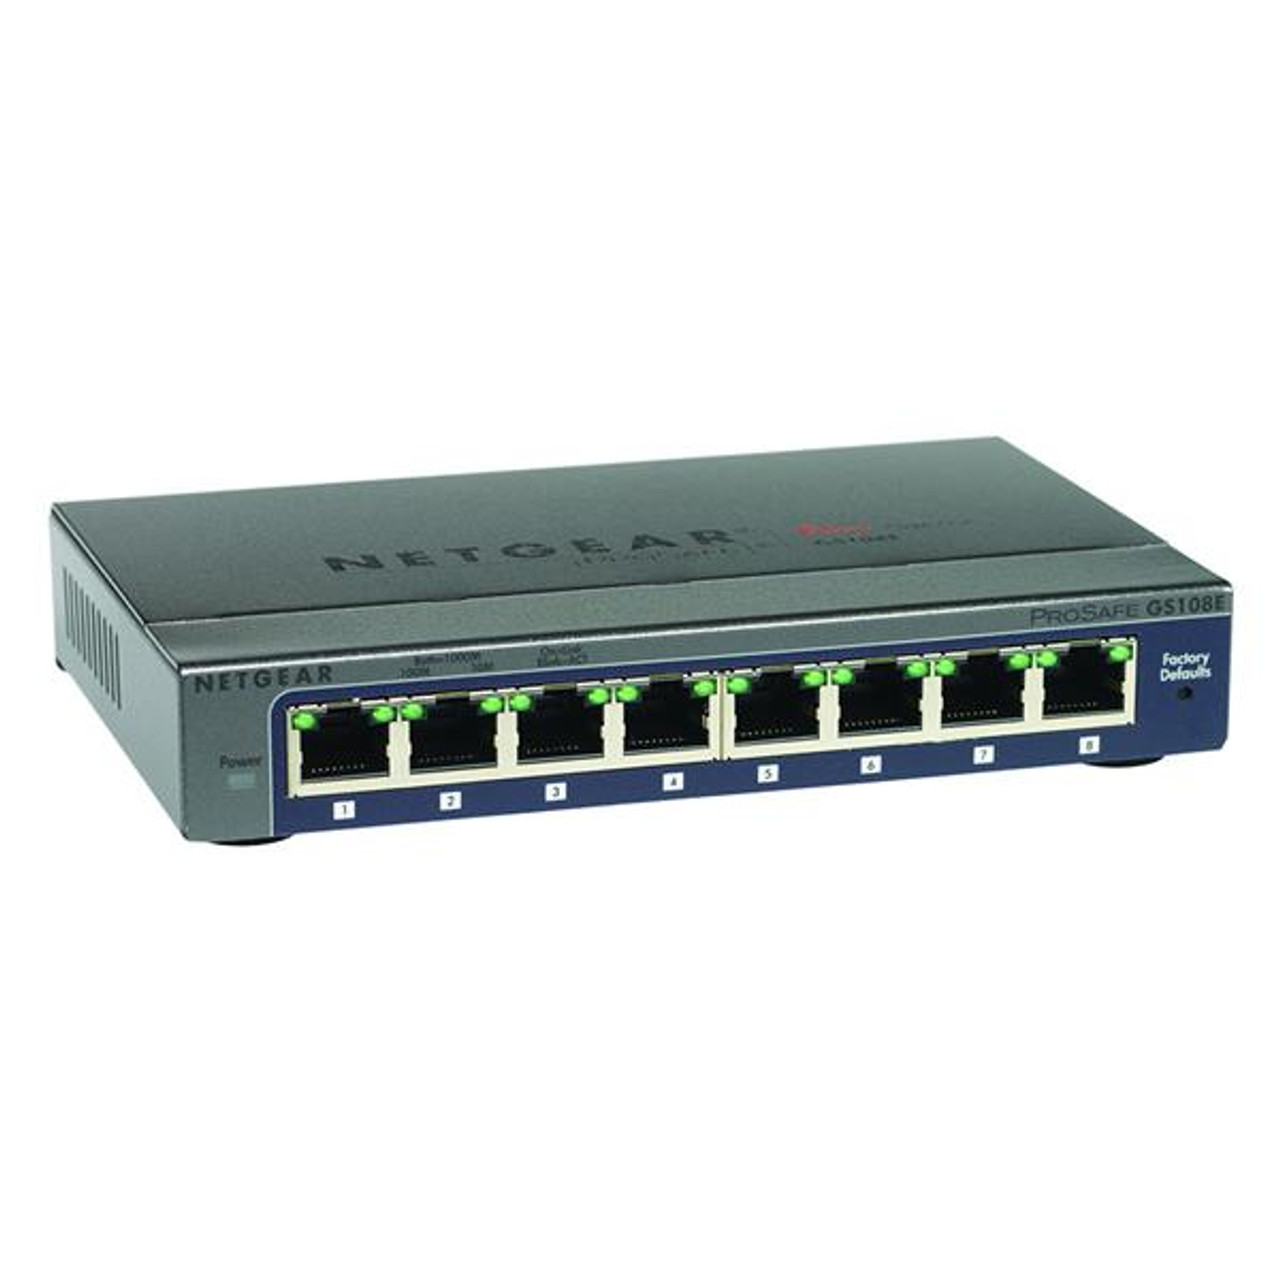 0712513 NetGear ProSafe Plus 8-Port 10/100/1000Mbps Gigabit Ethernet Desktop Switch With PoE (Refurbished)